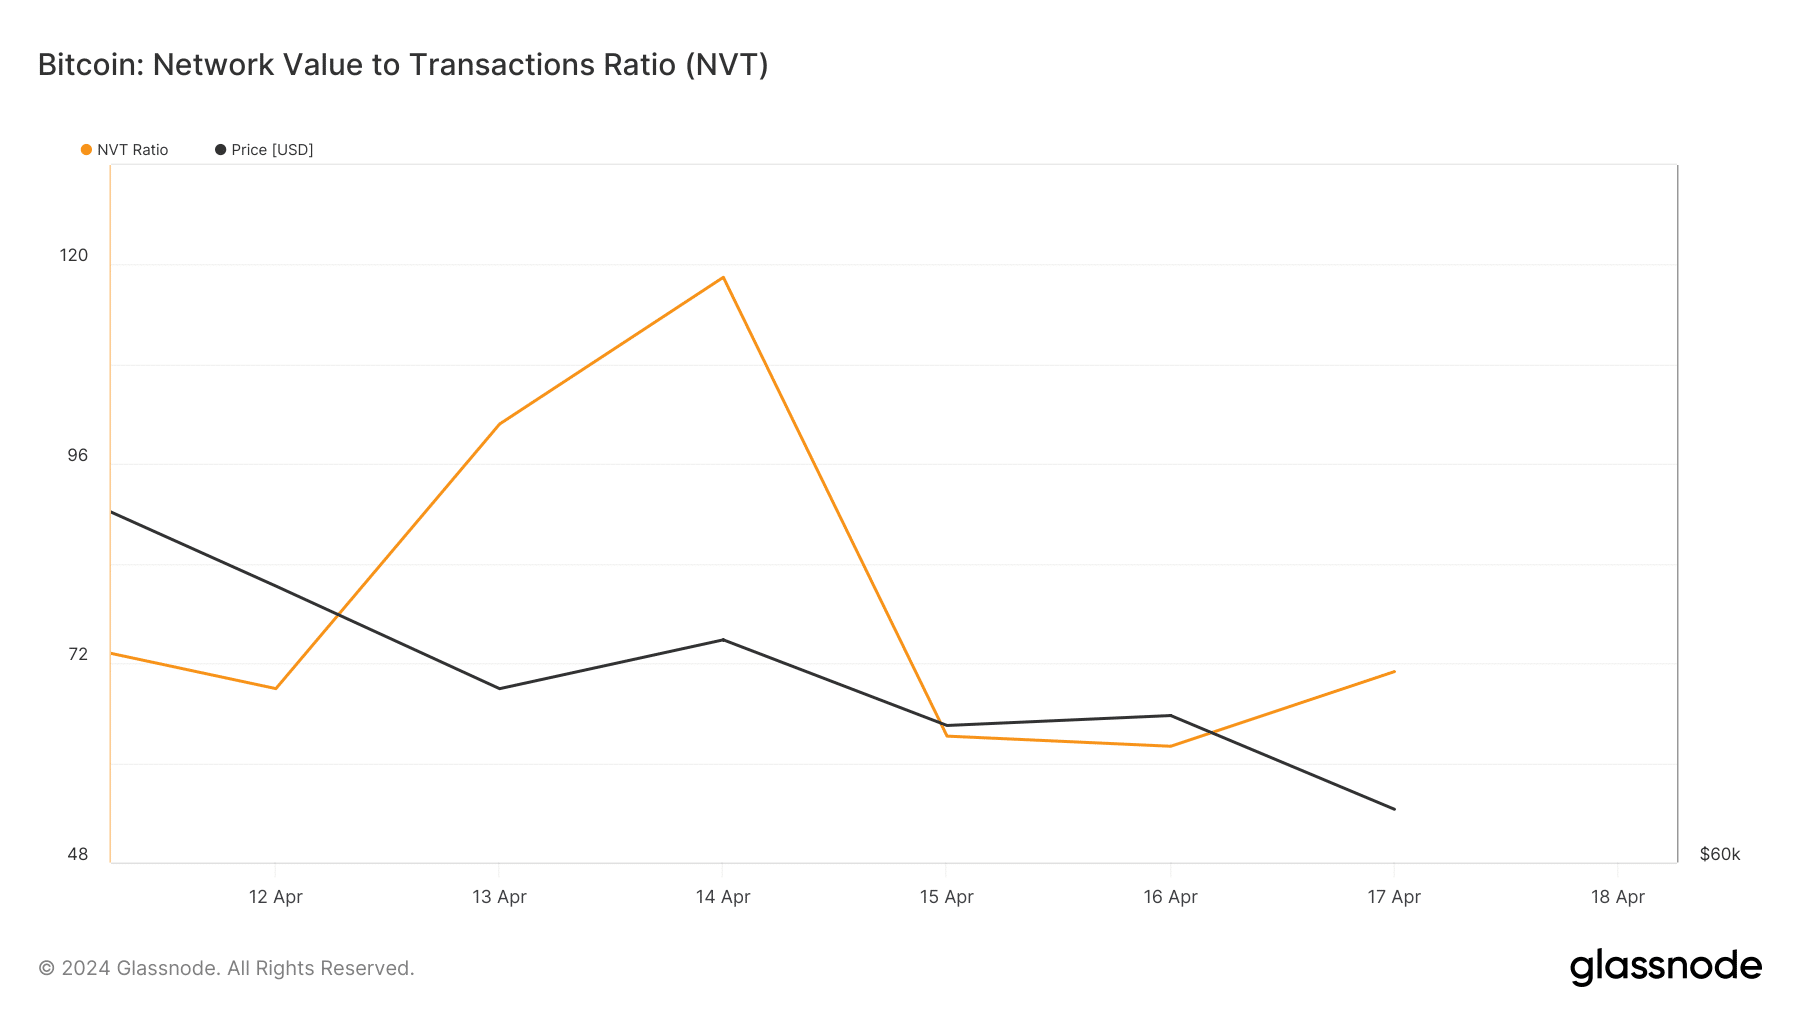 Le ratio NVT de Bitcoin a augmenté